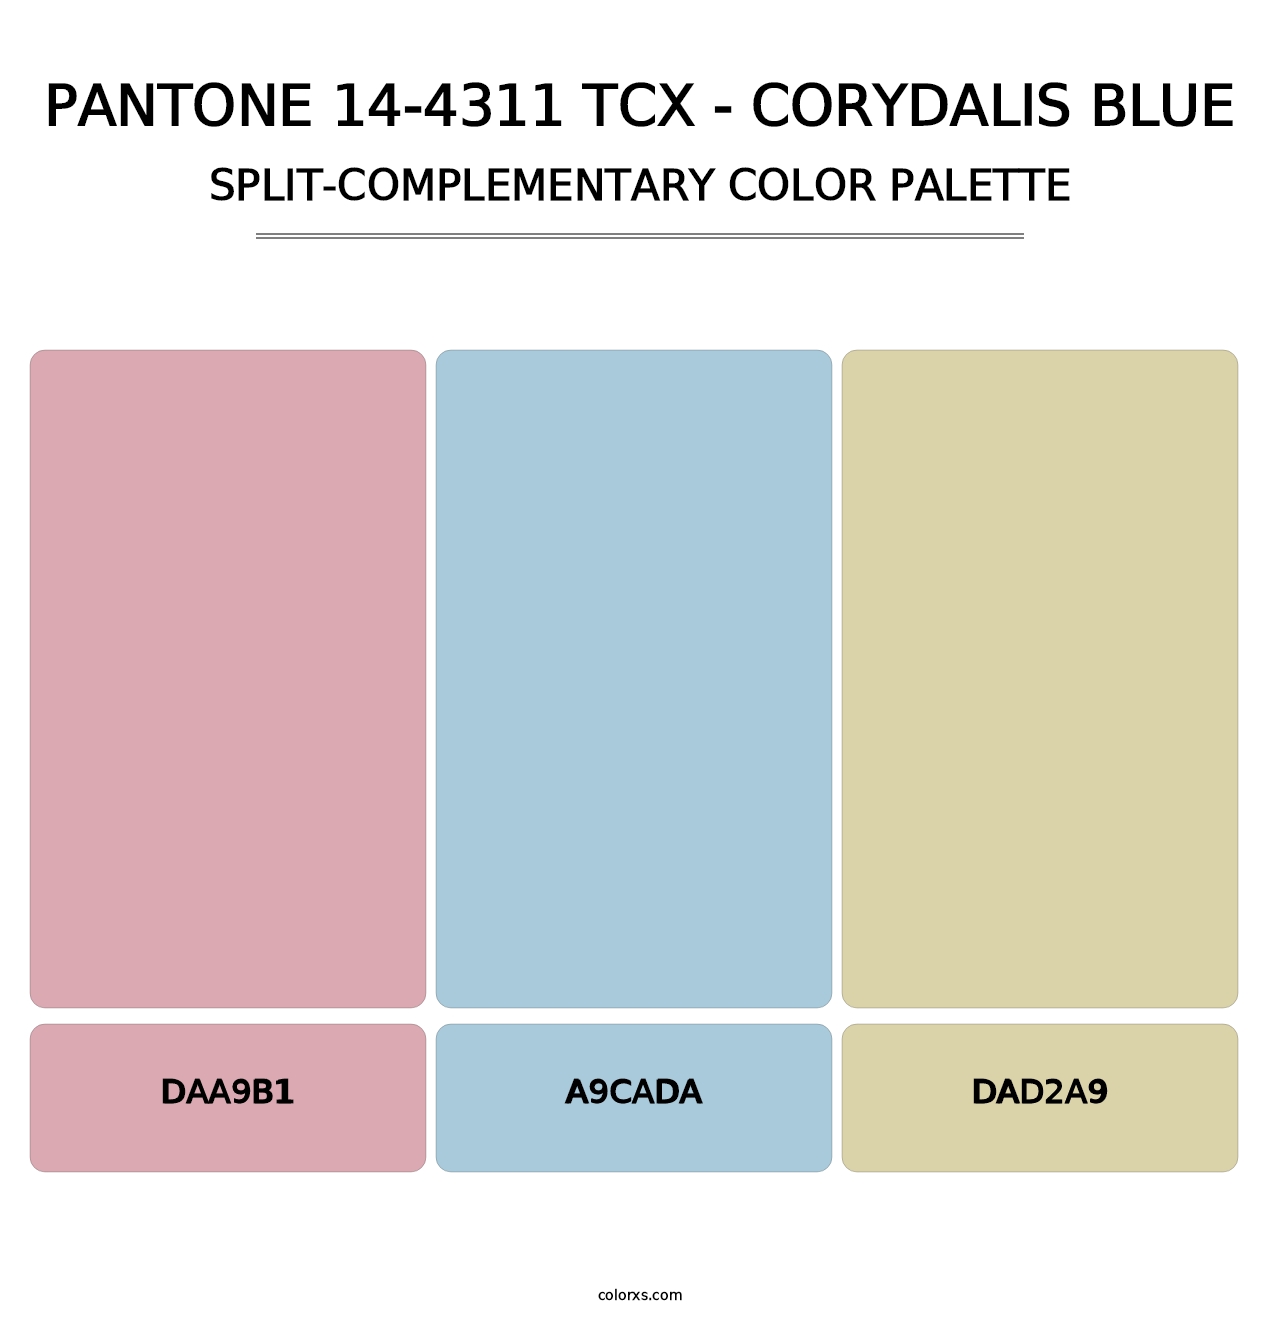 PANTONE 14-4311 TCX - Corydalis Blue - Split-Complementary Color Palette